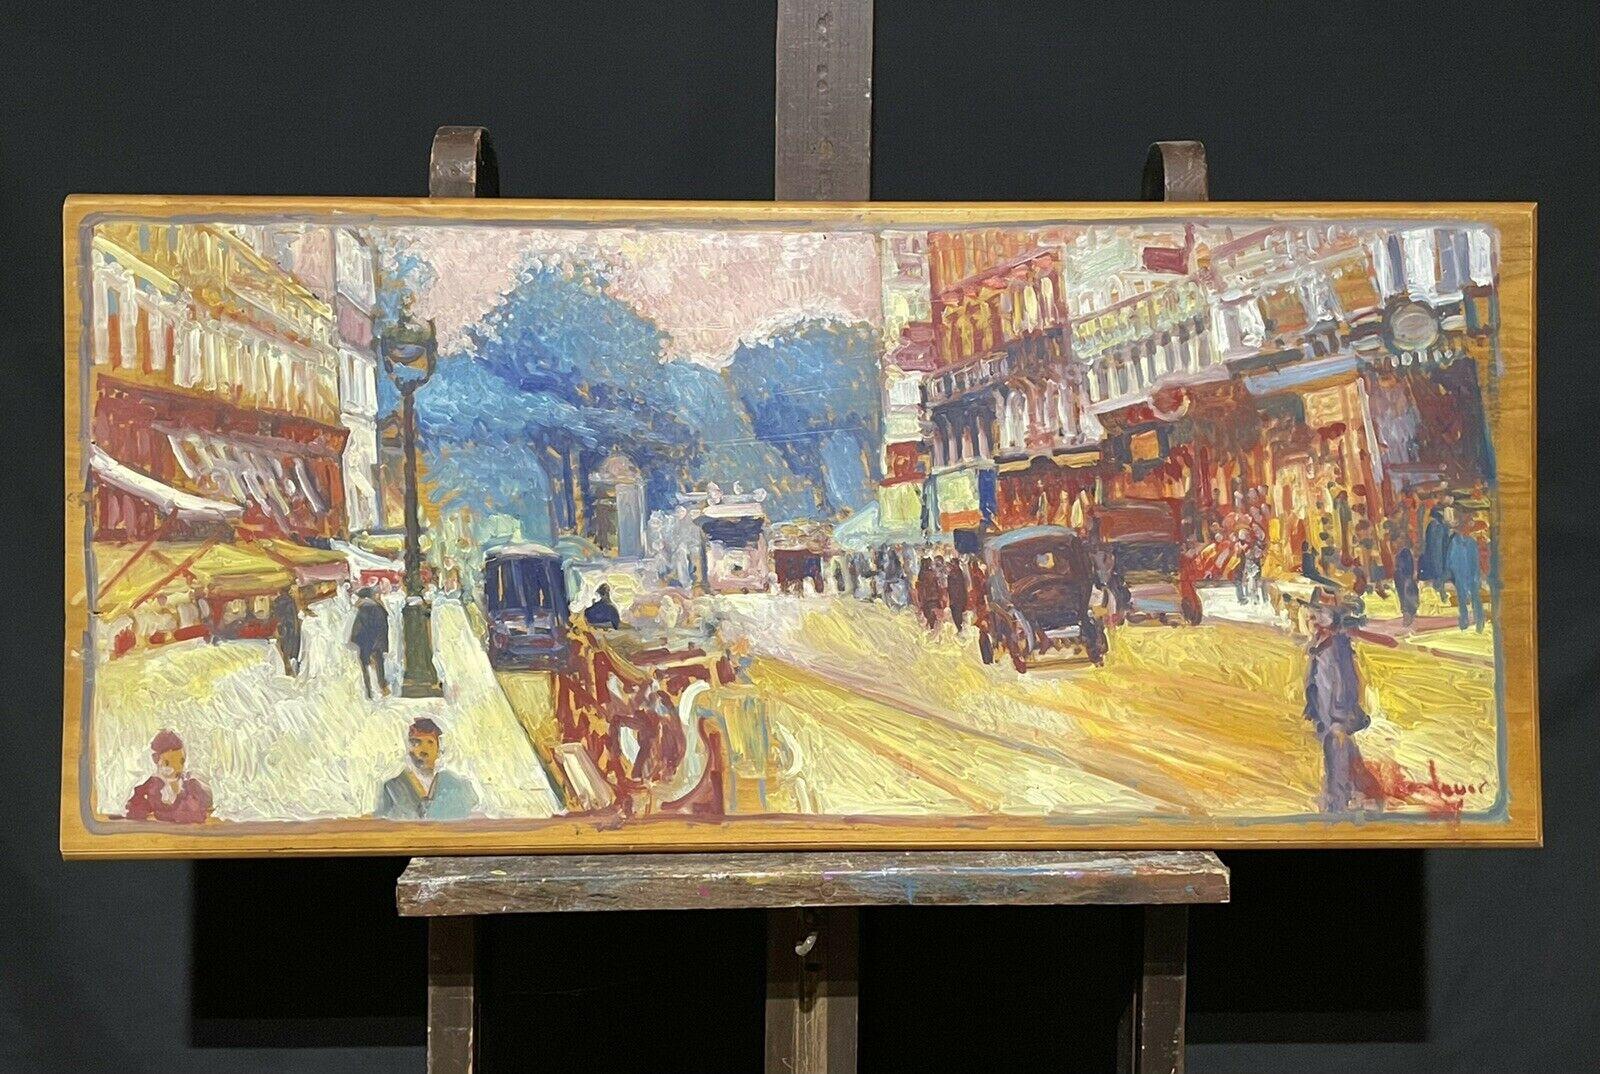 Grande huile impressionniste française signée - Scène de rue parisienne vintage - Painting de Patrice Landauer